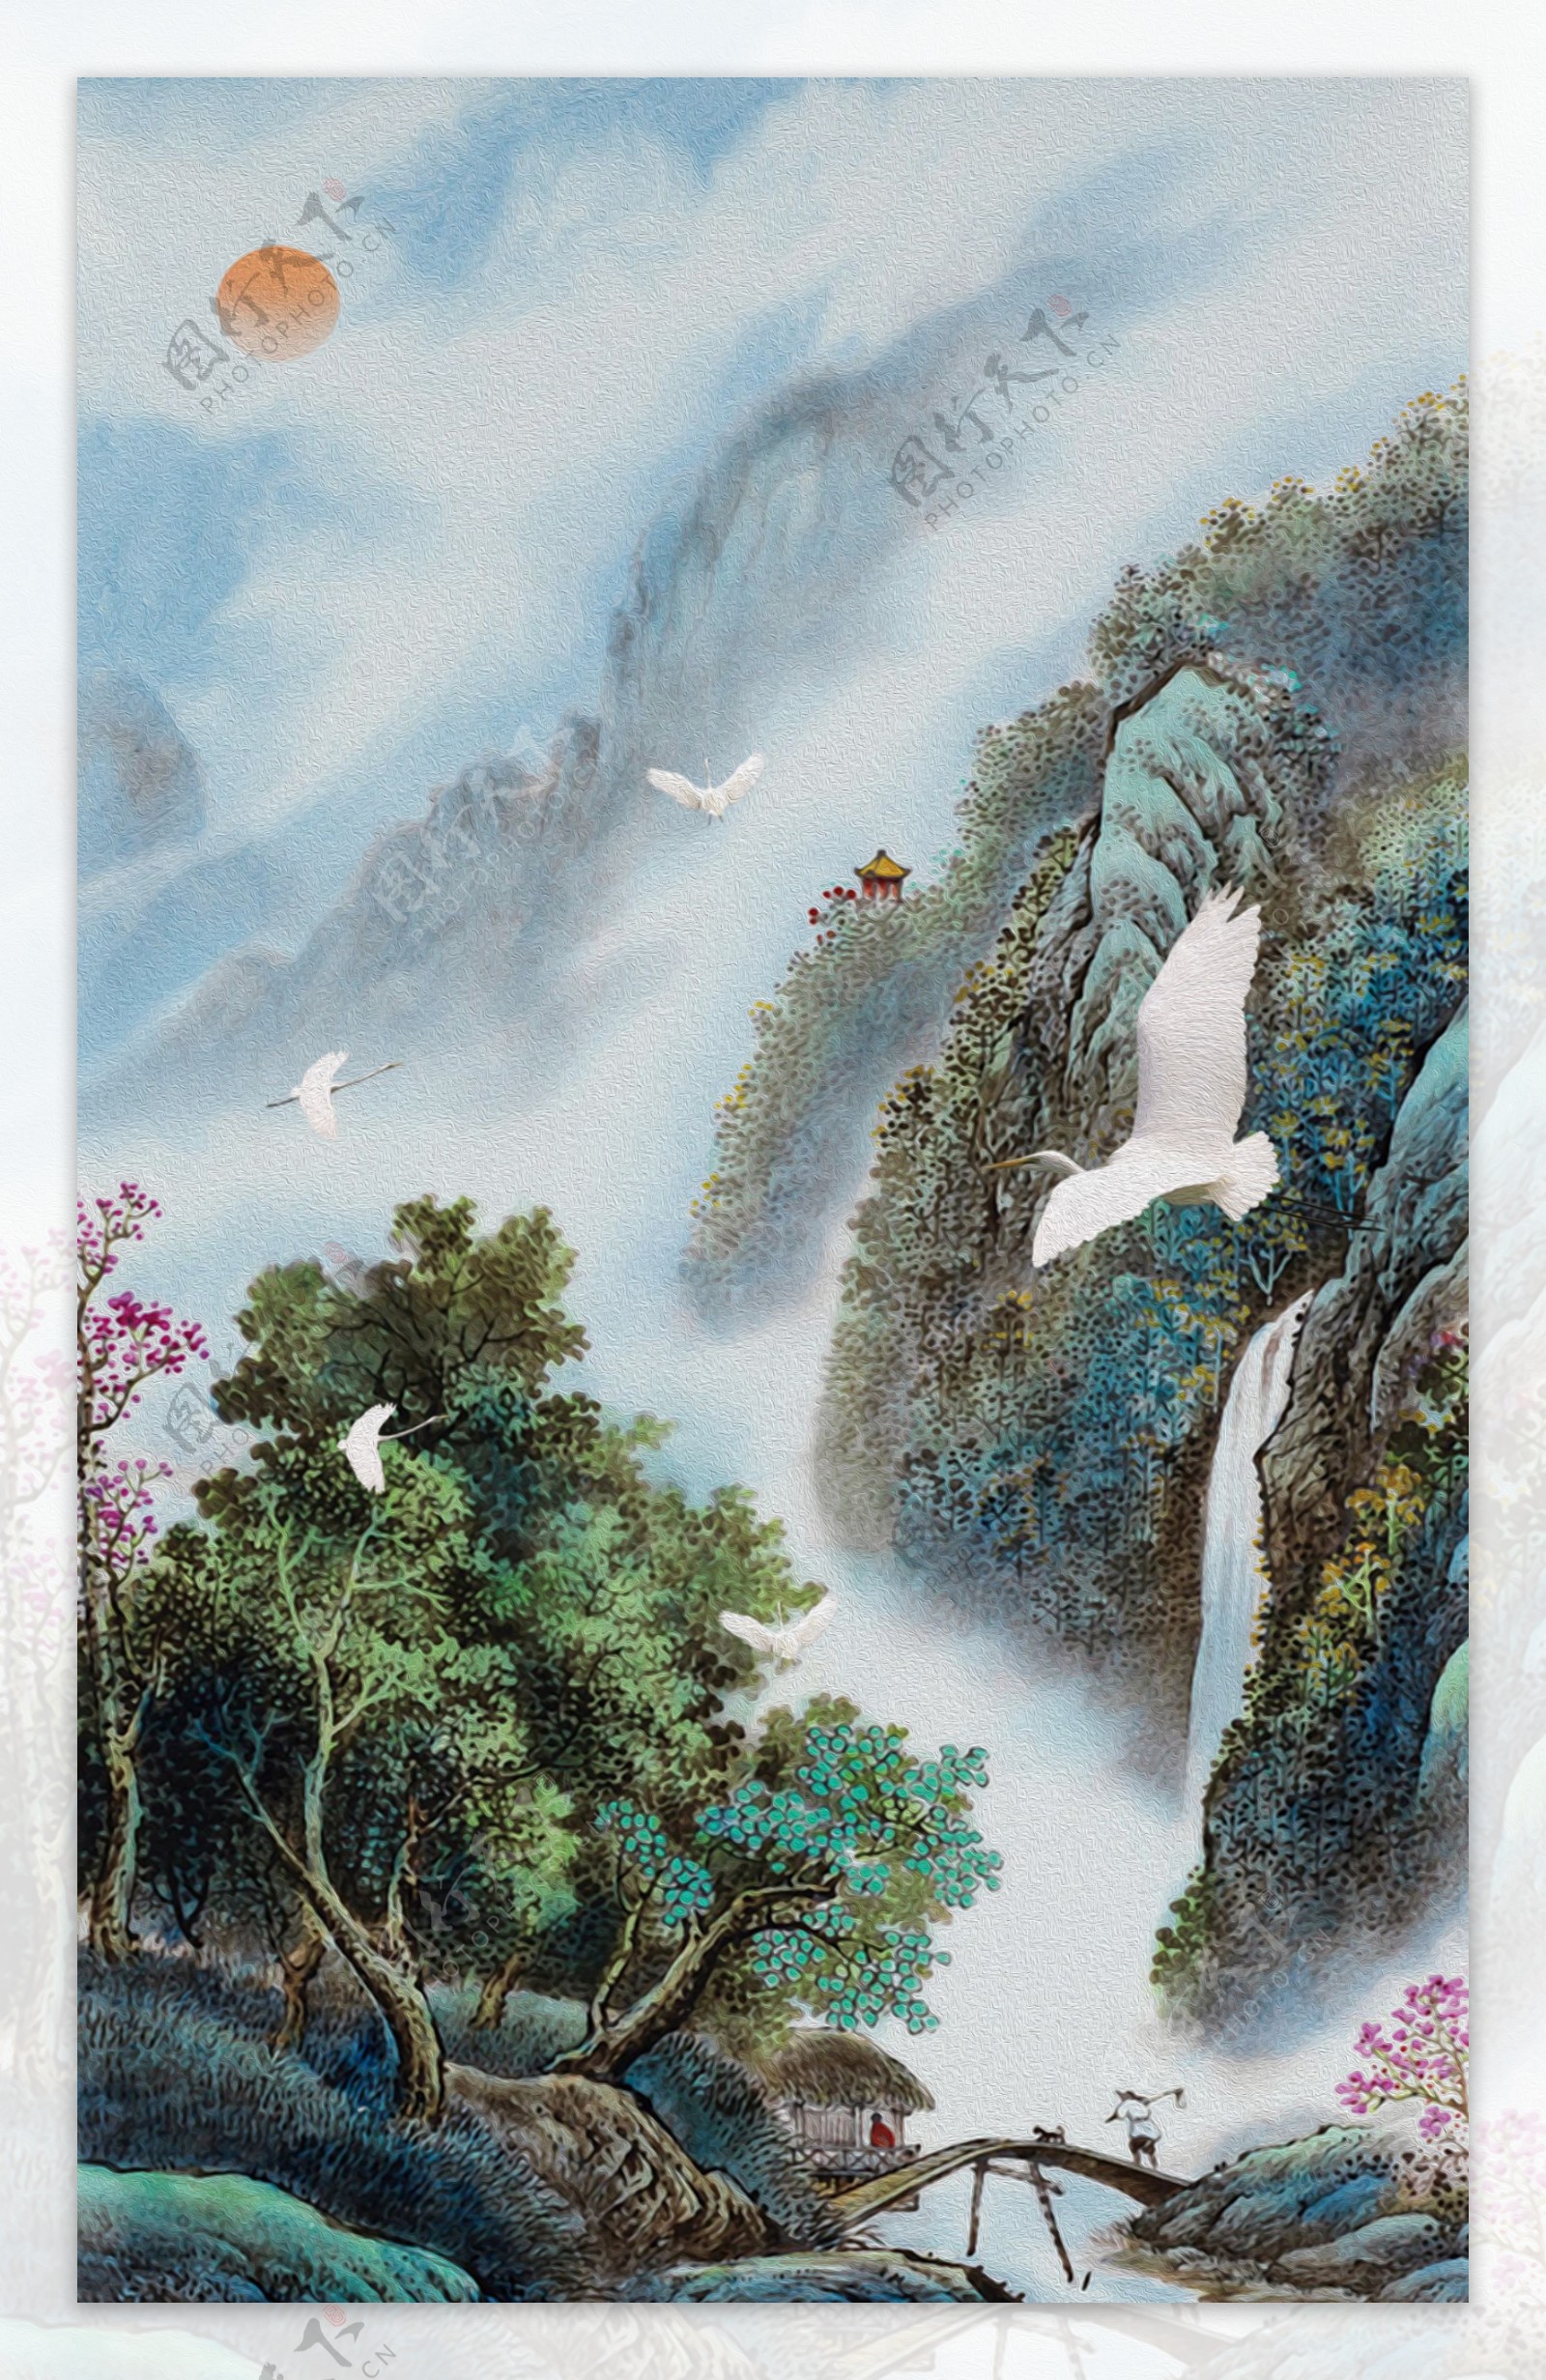 新中式国画山水装饰画